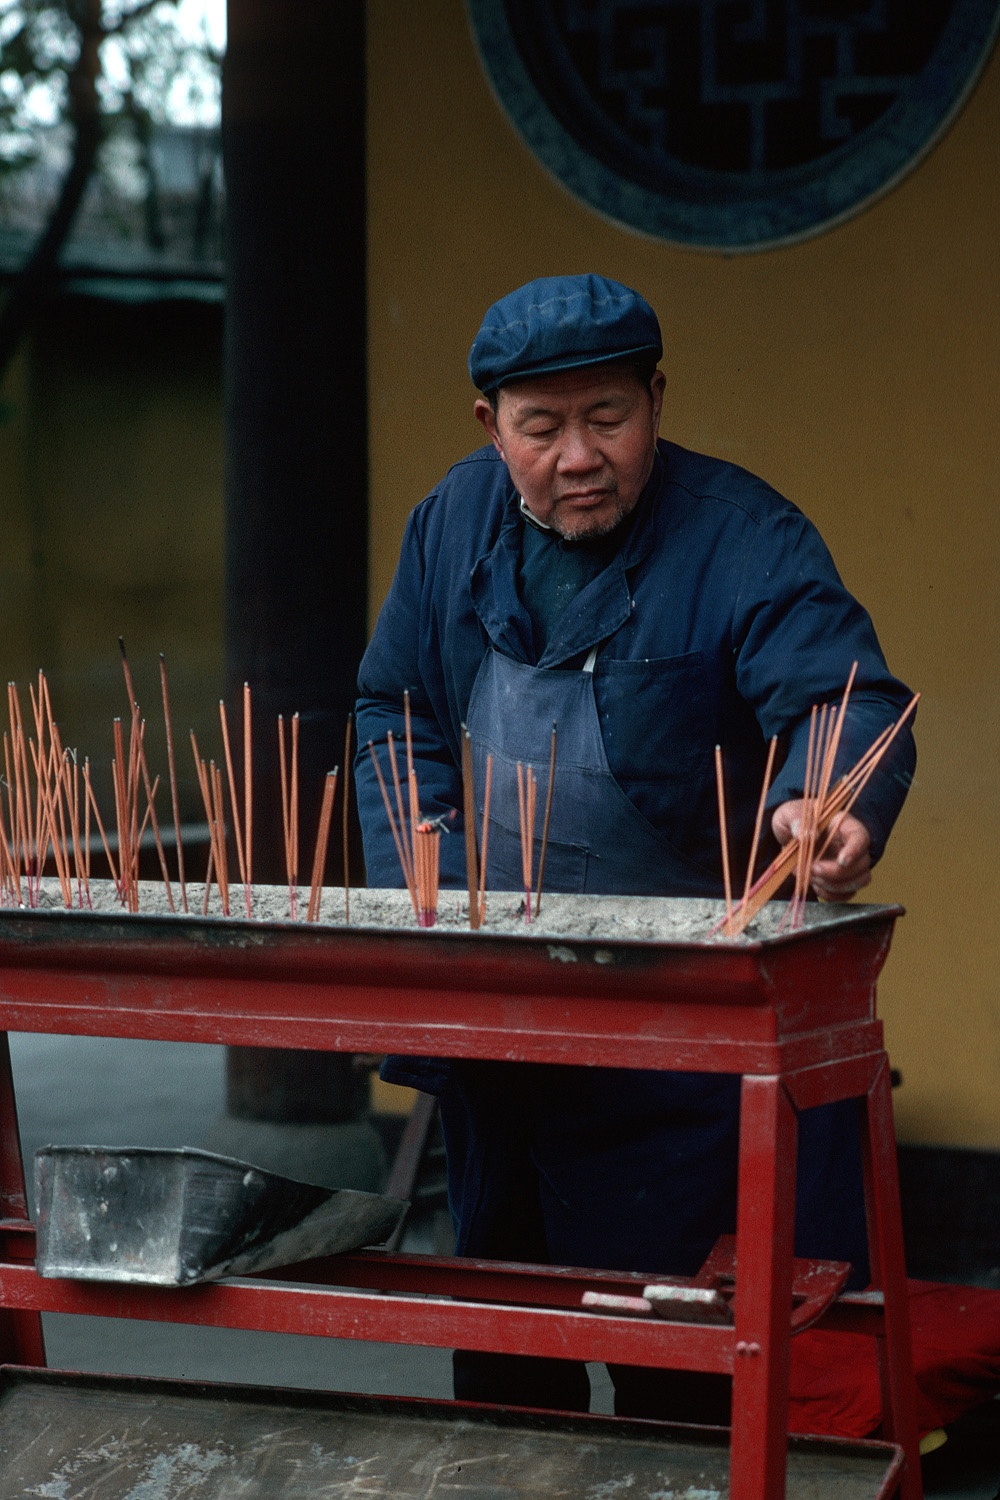 bill-hocker-temple-custodian-shanghai-china-1988